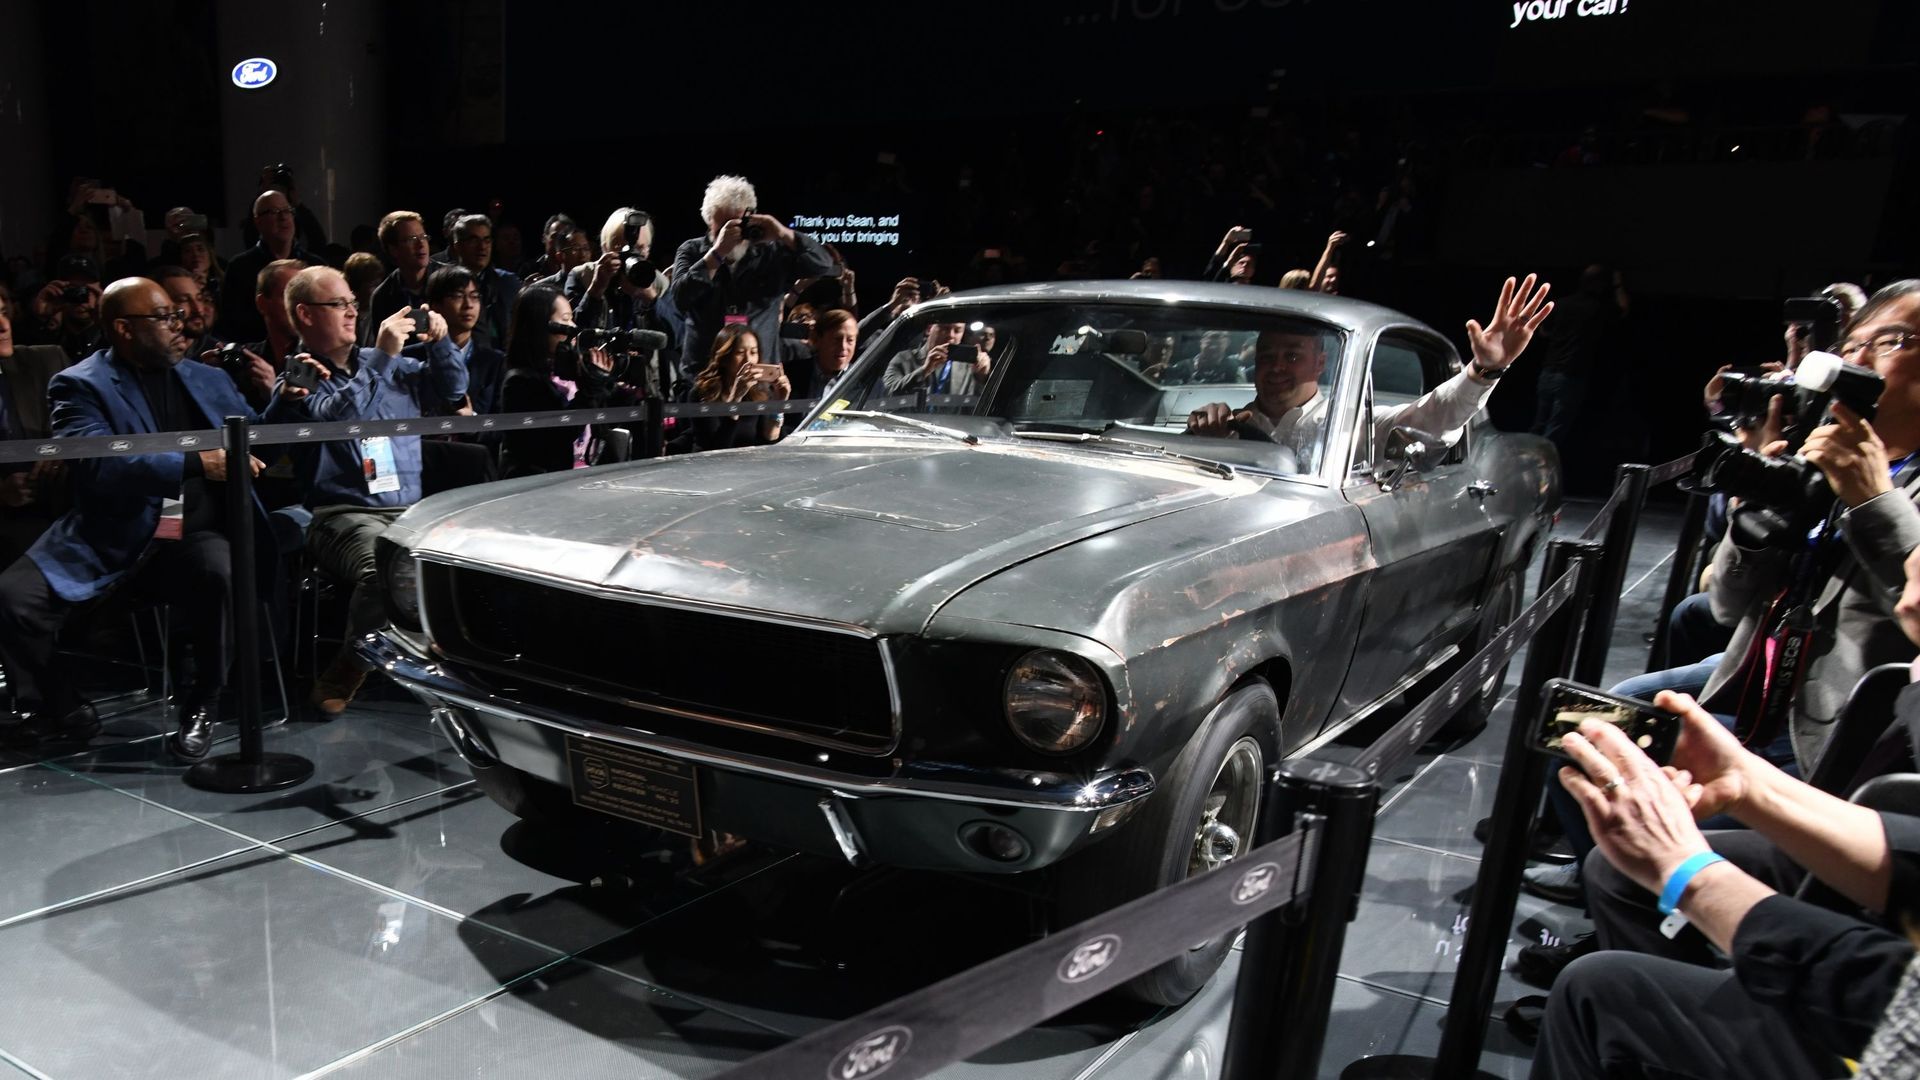 La célèbre Ford Mustang GT conduite par Steve McQueen dans les rues de San Francisco dans le célèbre film "Bullitt" a été vendue aux enchères pour 3,7 millions de dollars.